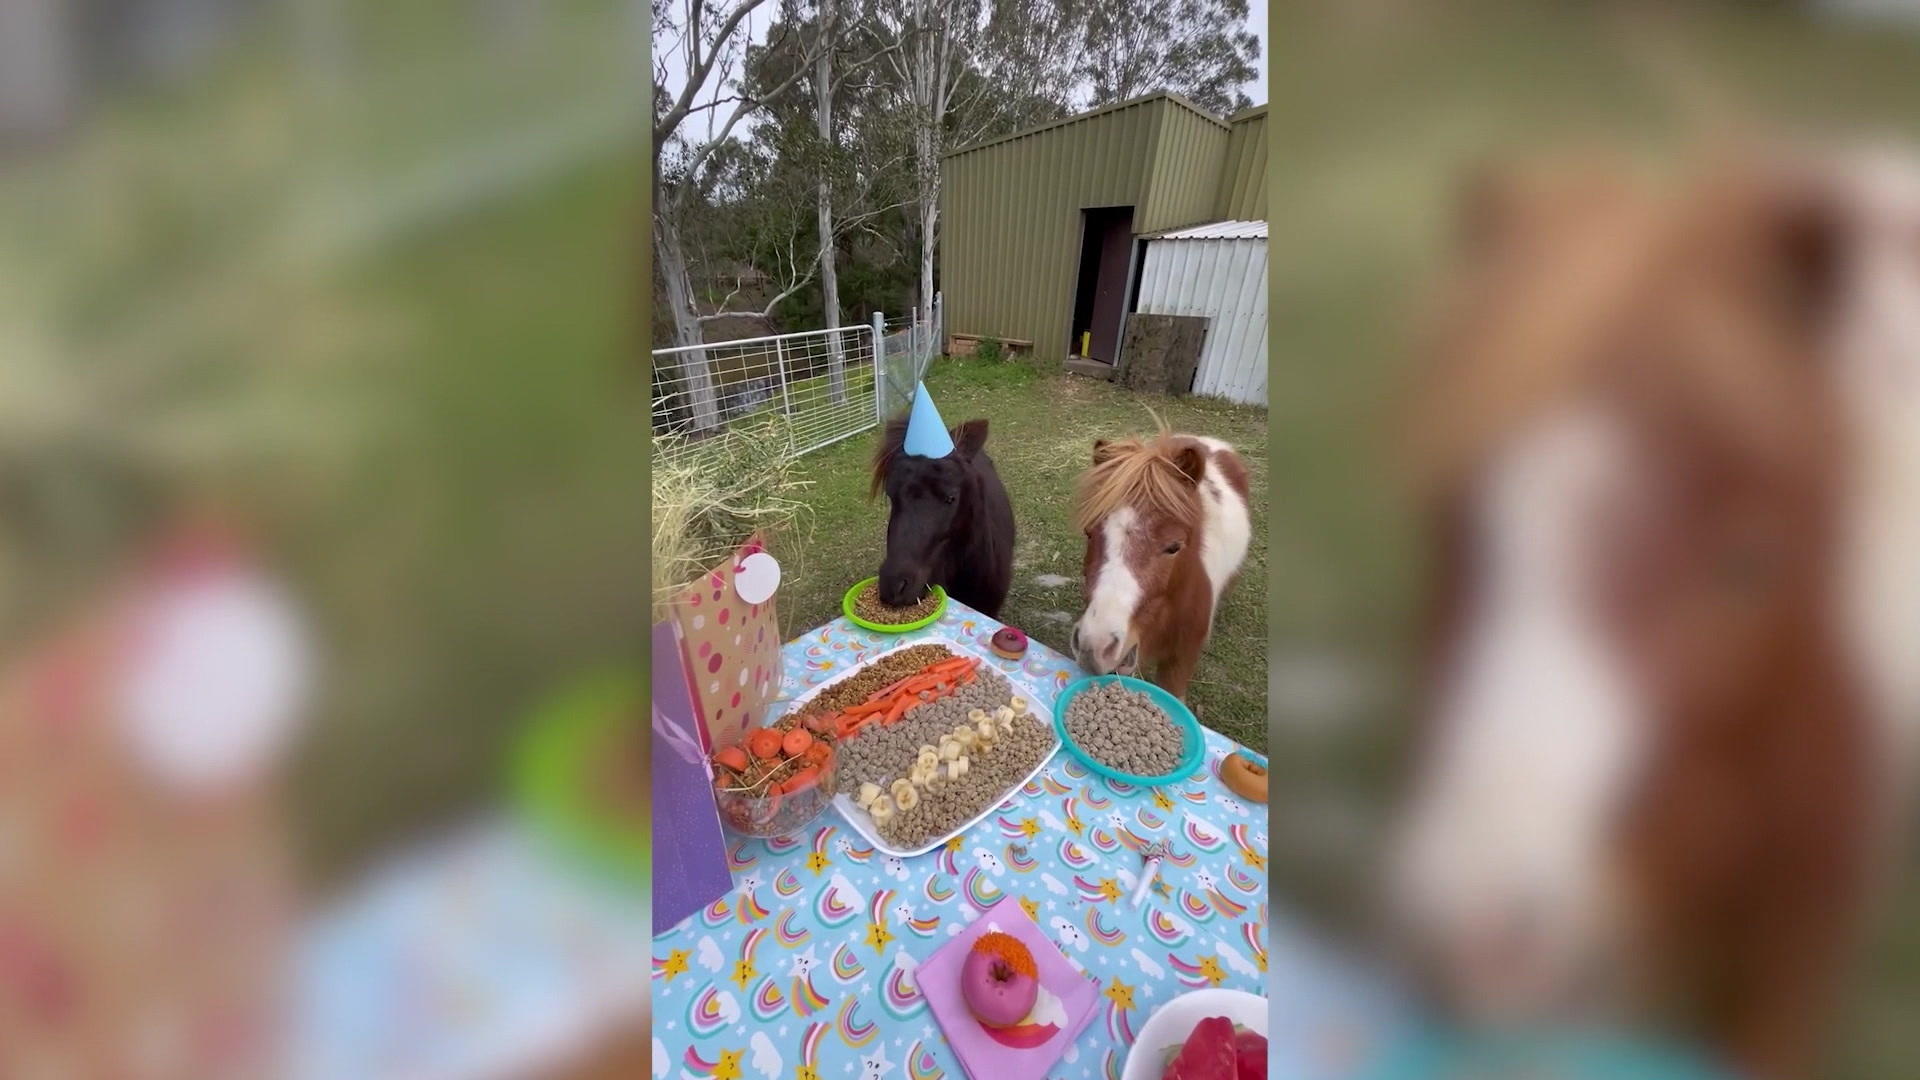 Hier feiern Pferde eine wilde Geburtstagsparty Allgemeiner Pferdegeburtstag in Australien